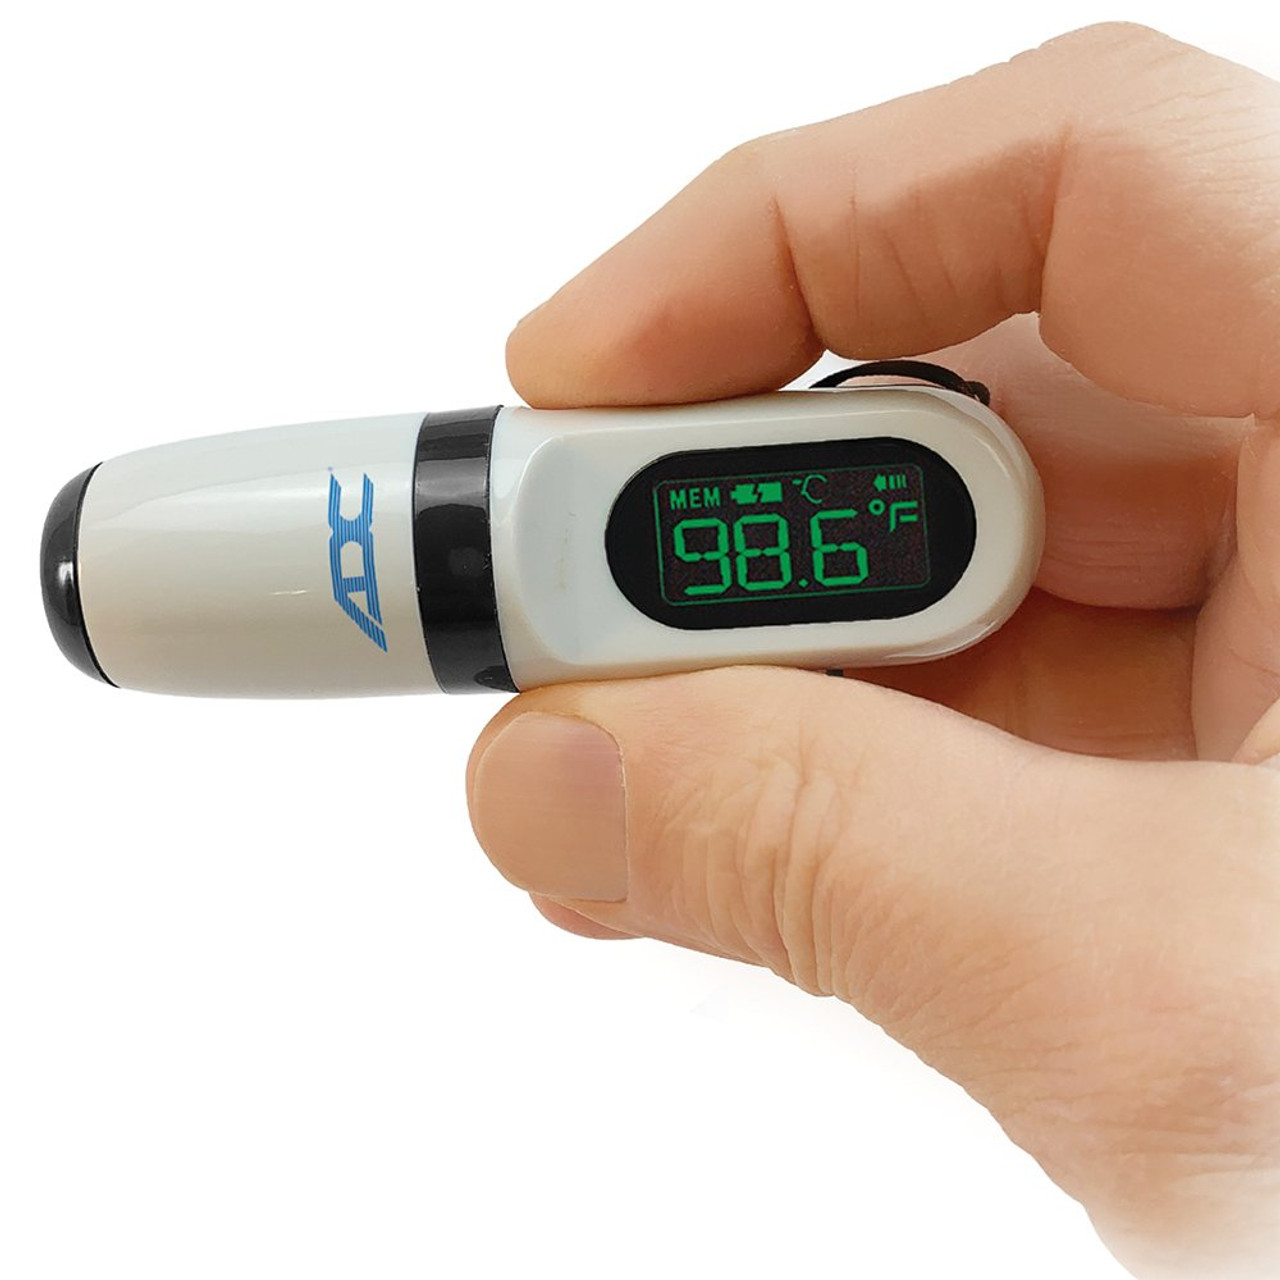 Adtemp Mini 432 Non-Contact Thermometer